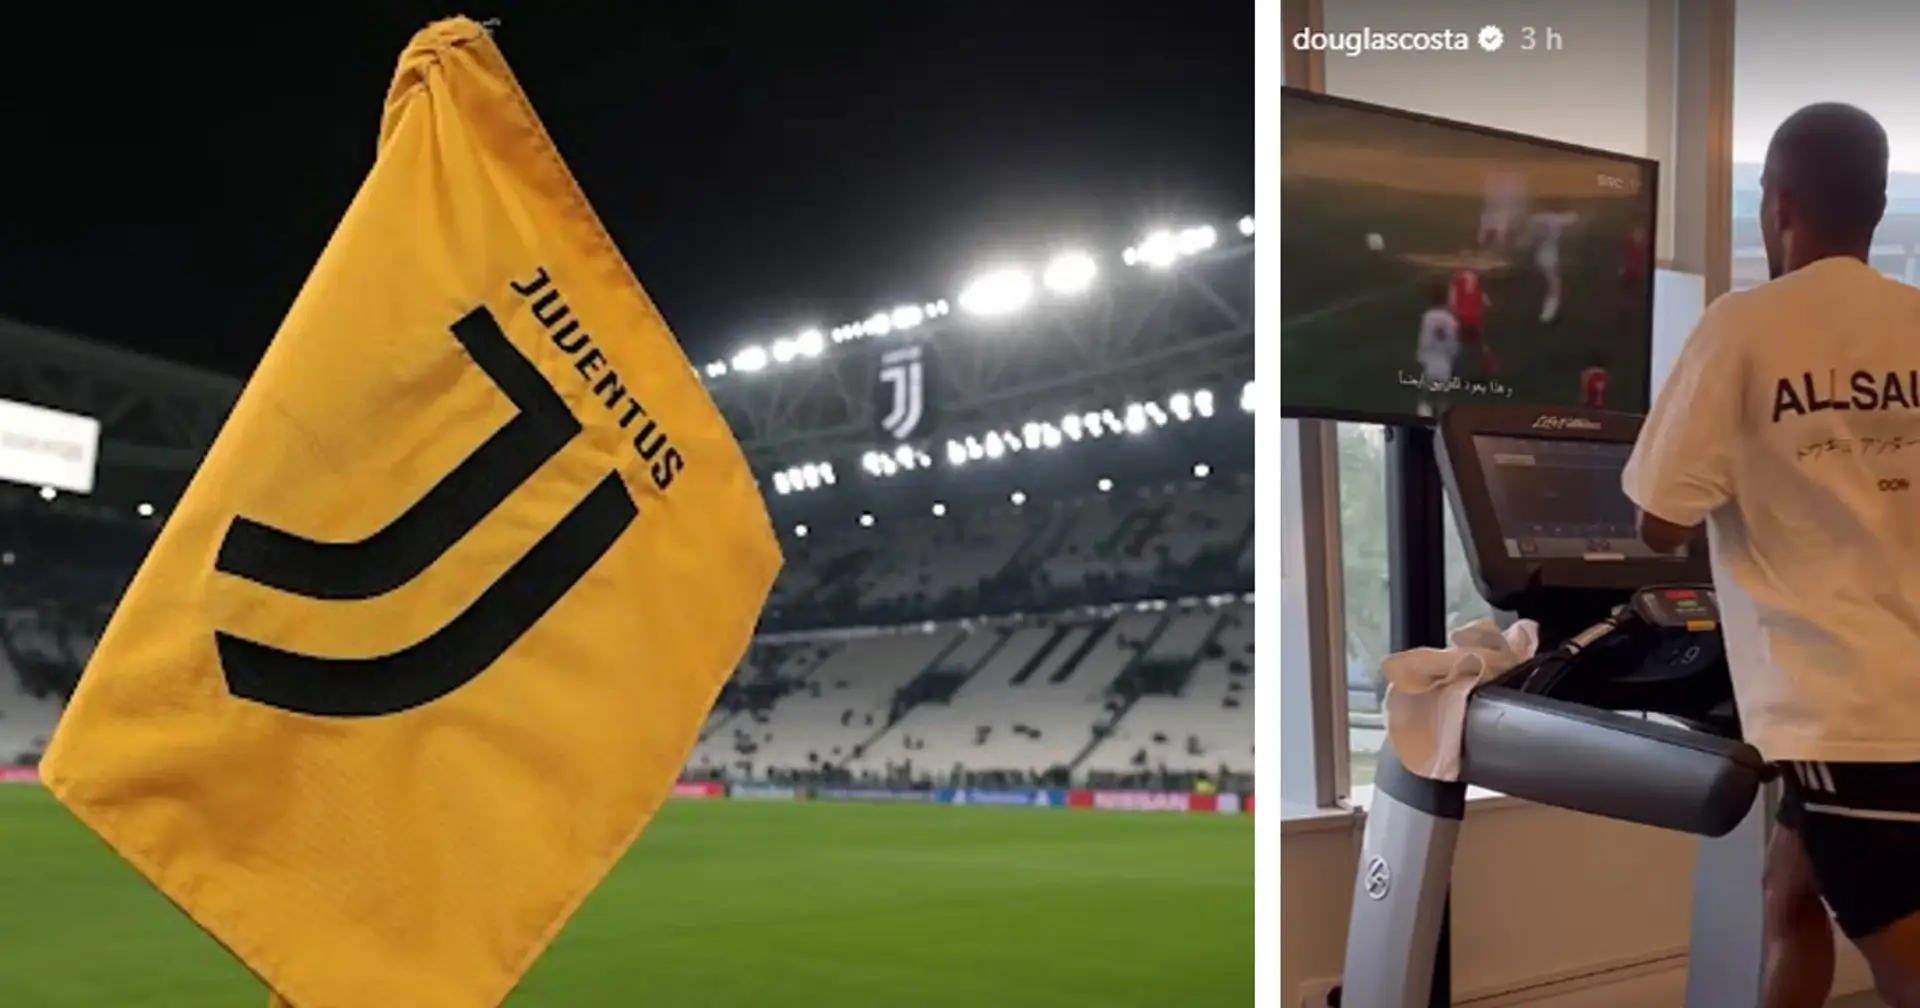 Douglas Costa e l'indizio social sulla sua prossima squadra: il brasiliano allontana la Juventus